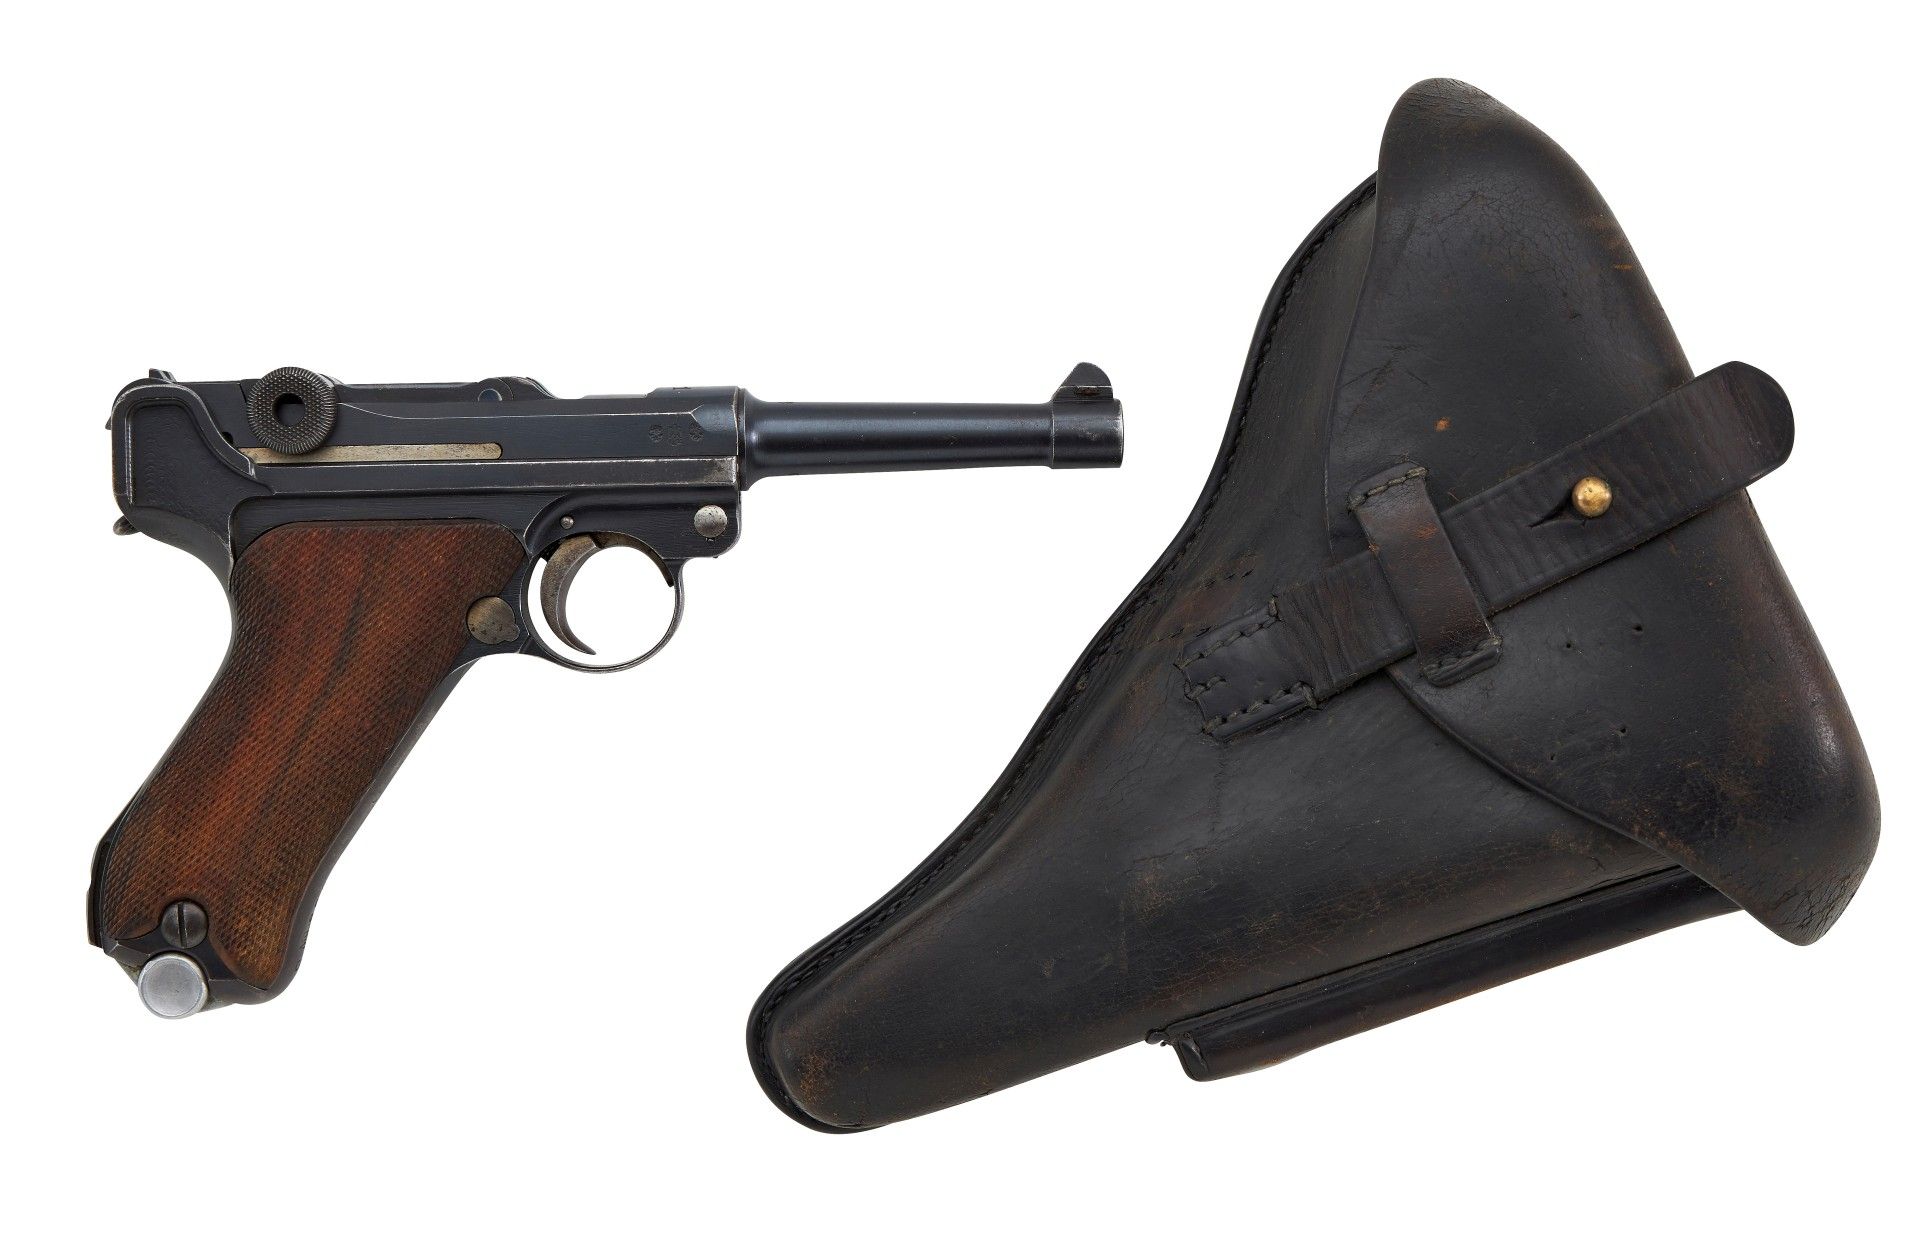 Halbautomatische Pistole Mod.: P. 08 (Polizei) Herst.: DWM Baujahr: 1921 Deutsche Waffen- und Mu... - Image 6 of 6